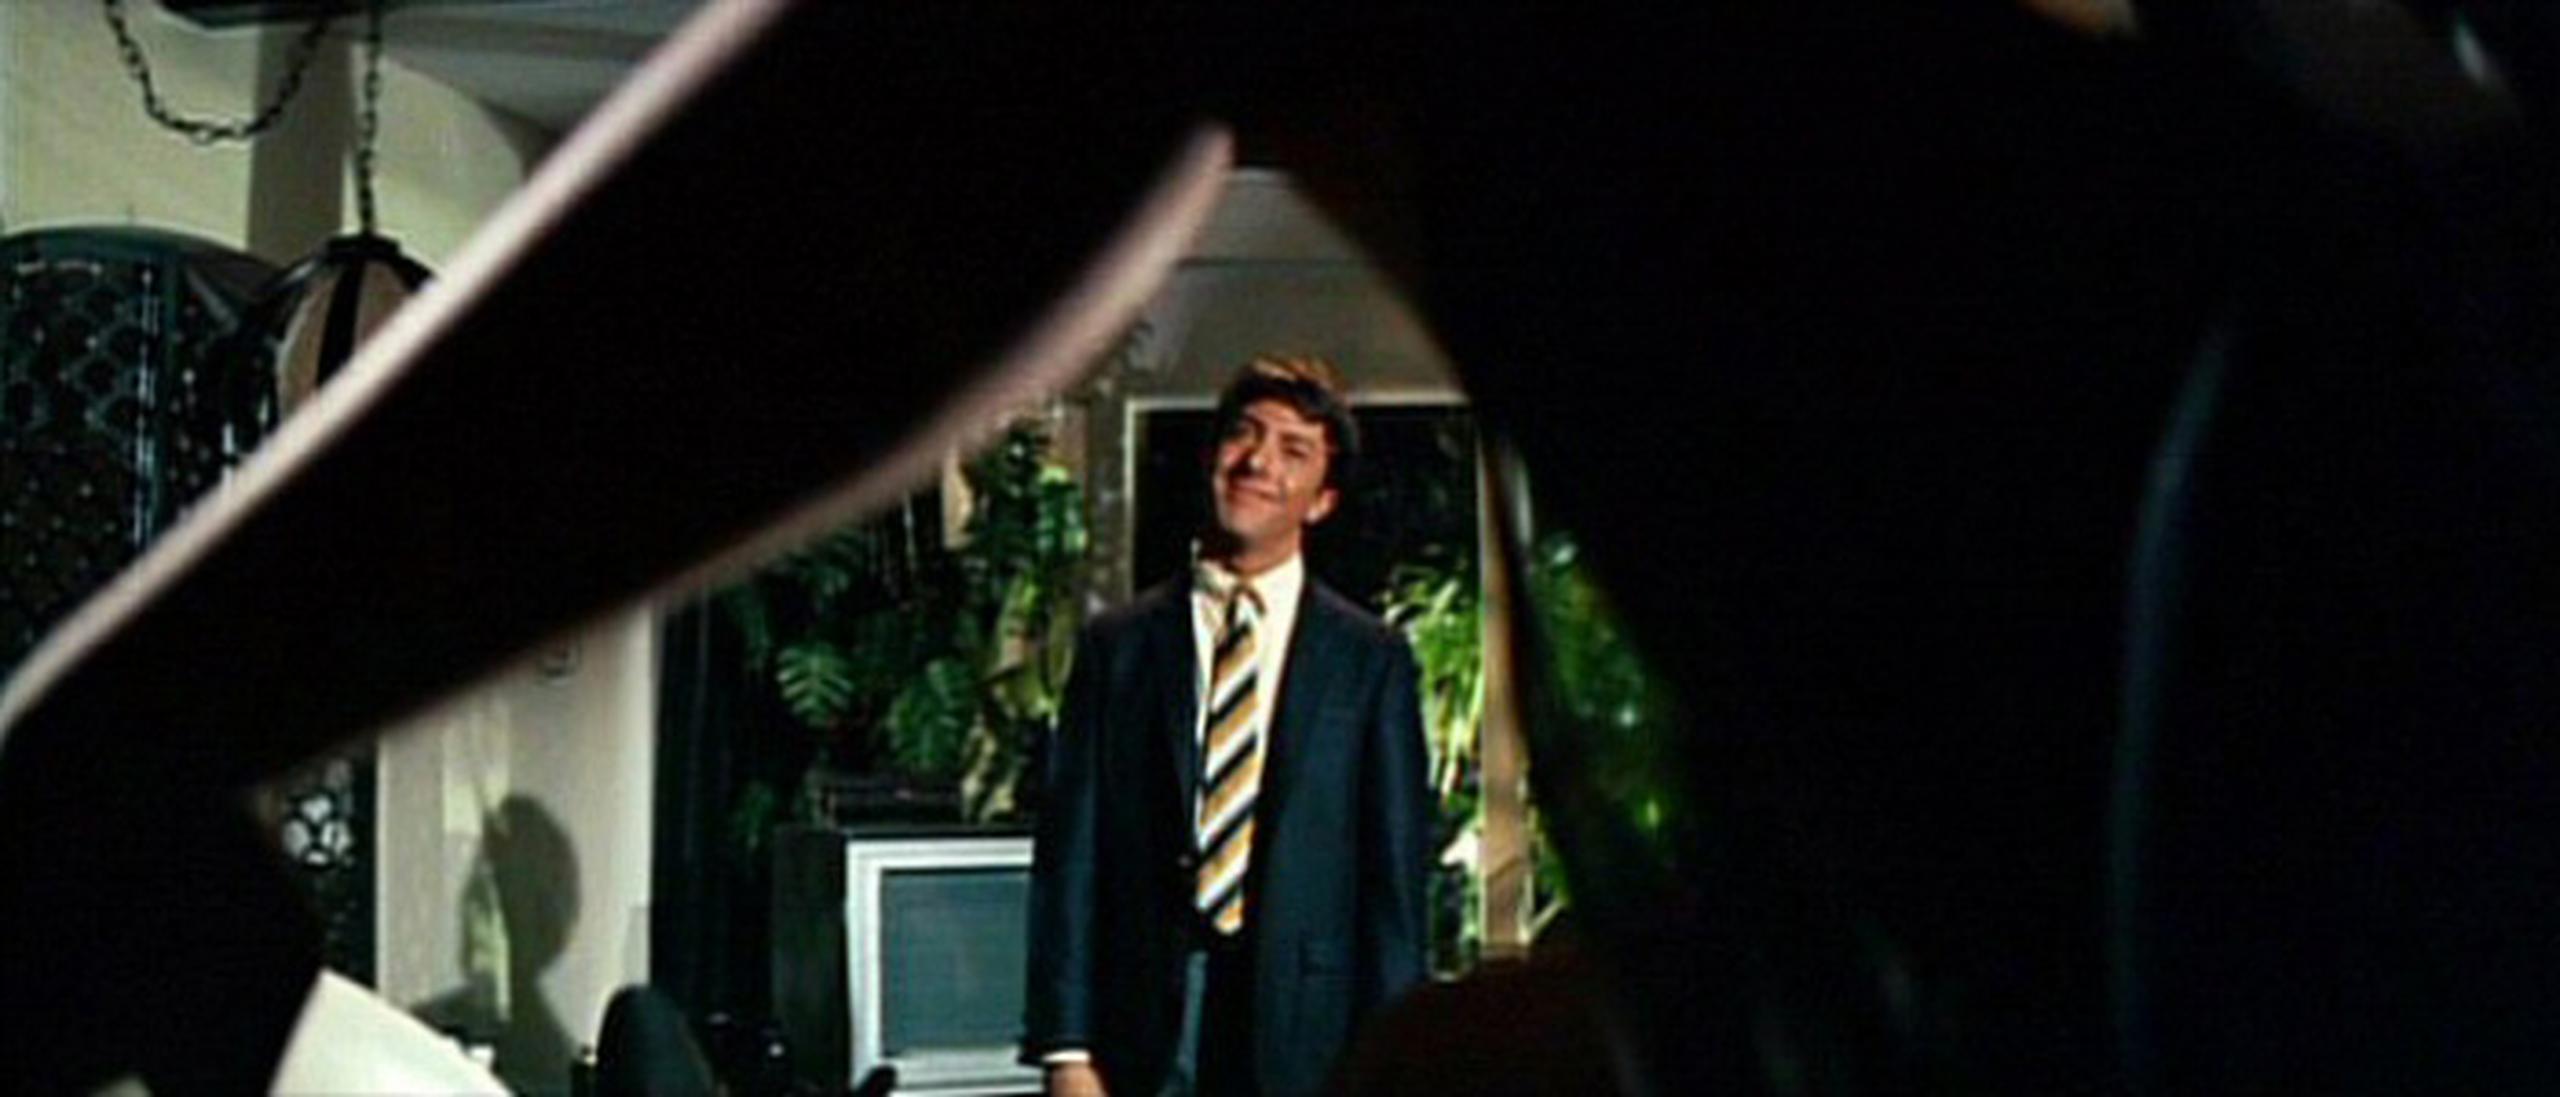 El filme de Nichols, protagonizado por un entonces desconocido Dustin Hoffman como Braddock y Anne Bancroft como la señora Robinson, causó sensación en el mundo.